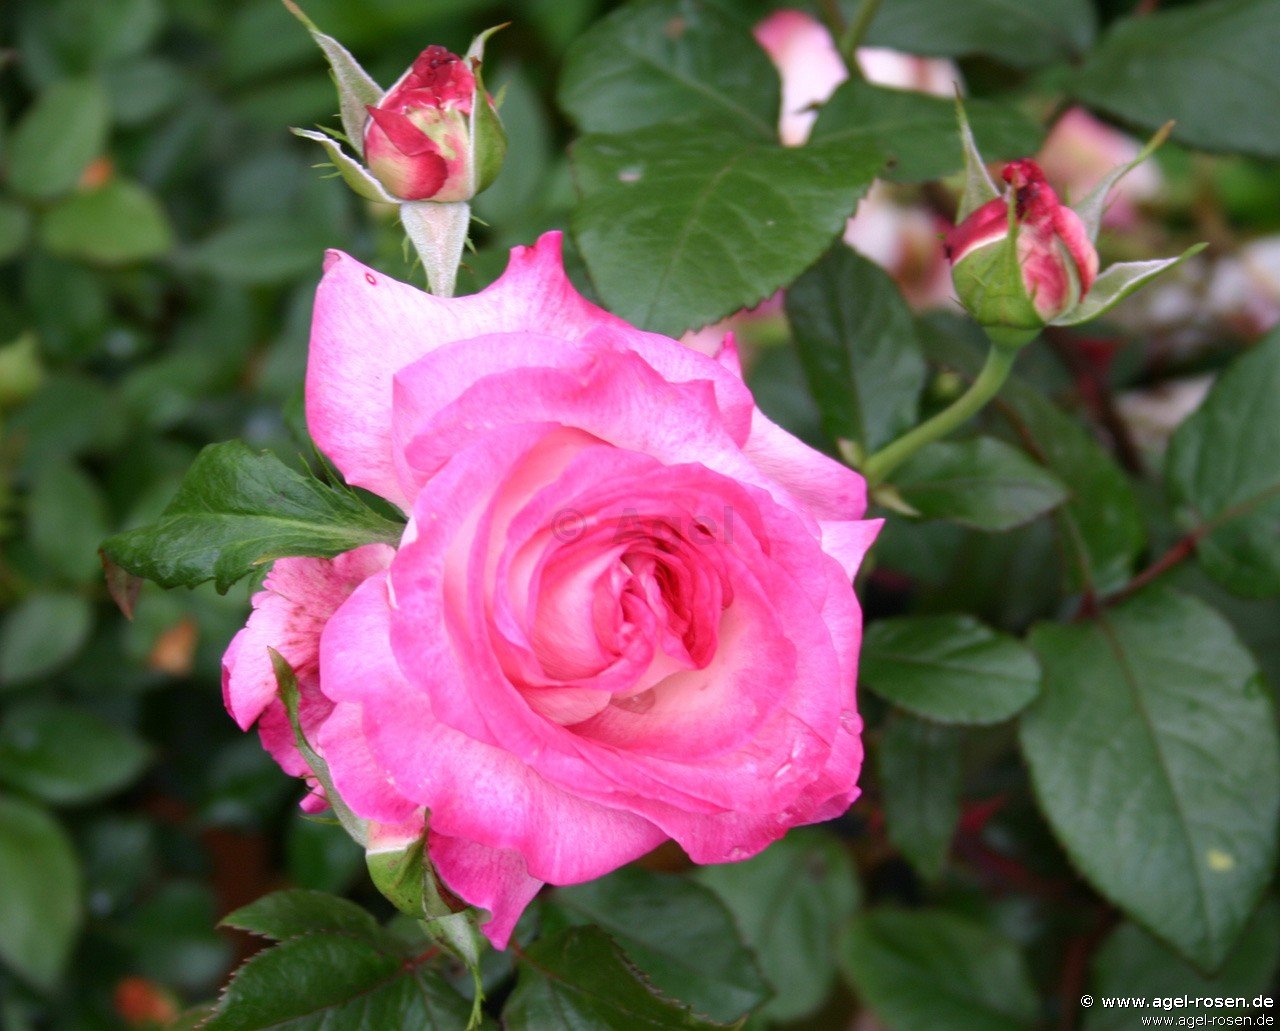 Роза чайно-гибридная Паскаль